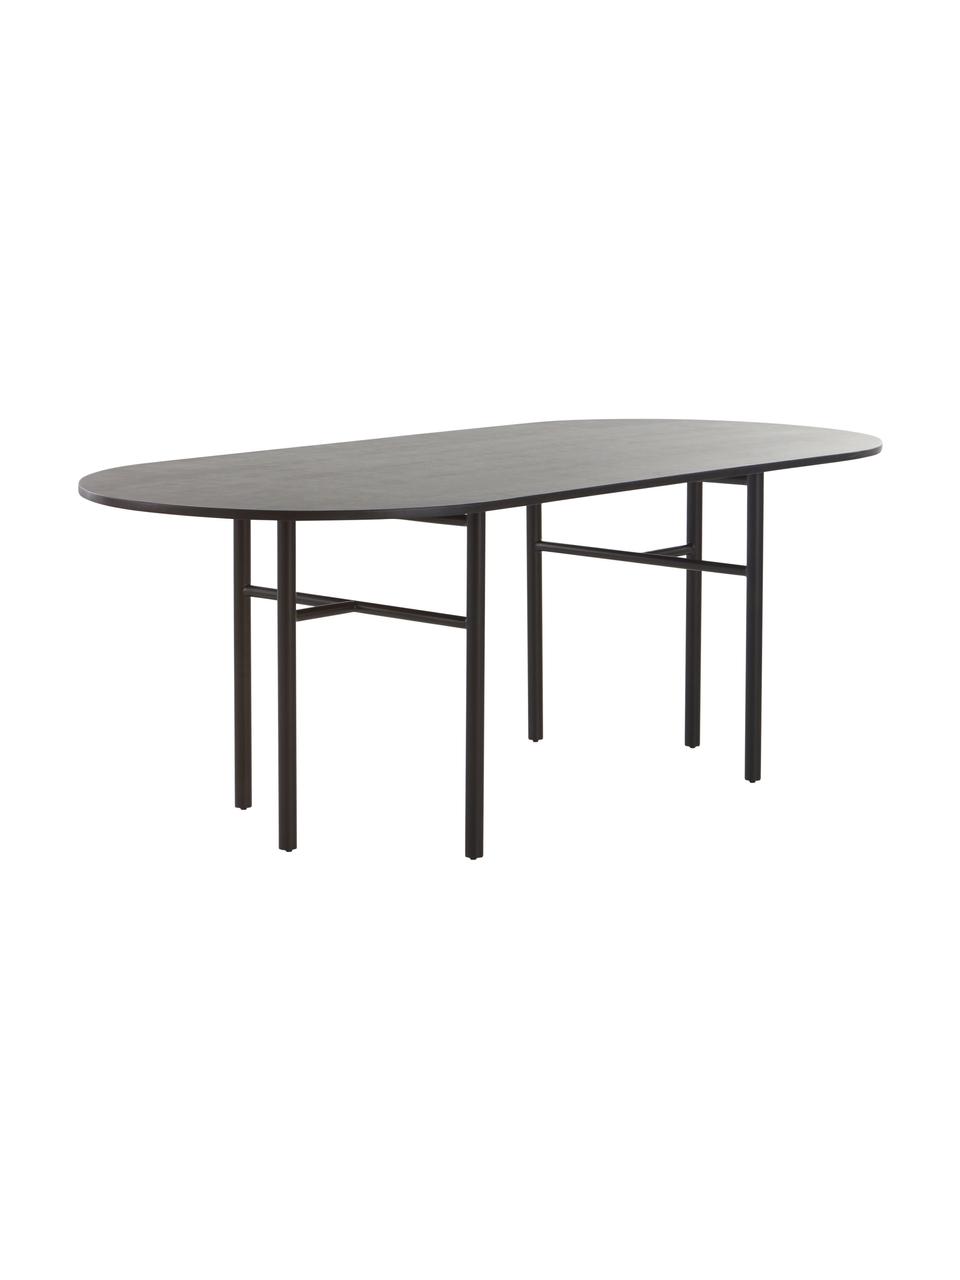 Ovaler Esstisch Vejby aus Mangoholz, Tischplatte: Mangoholz, Beine: Metall, lackiert, Mangoholz, B 210 x H 75 cm